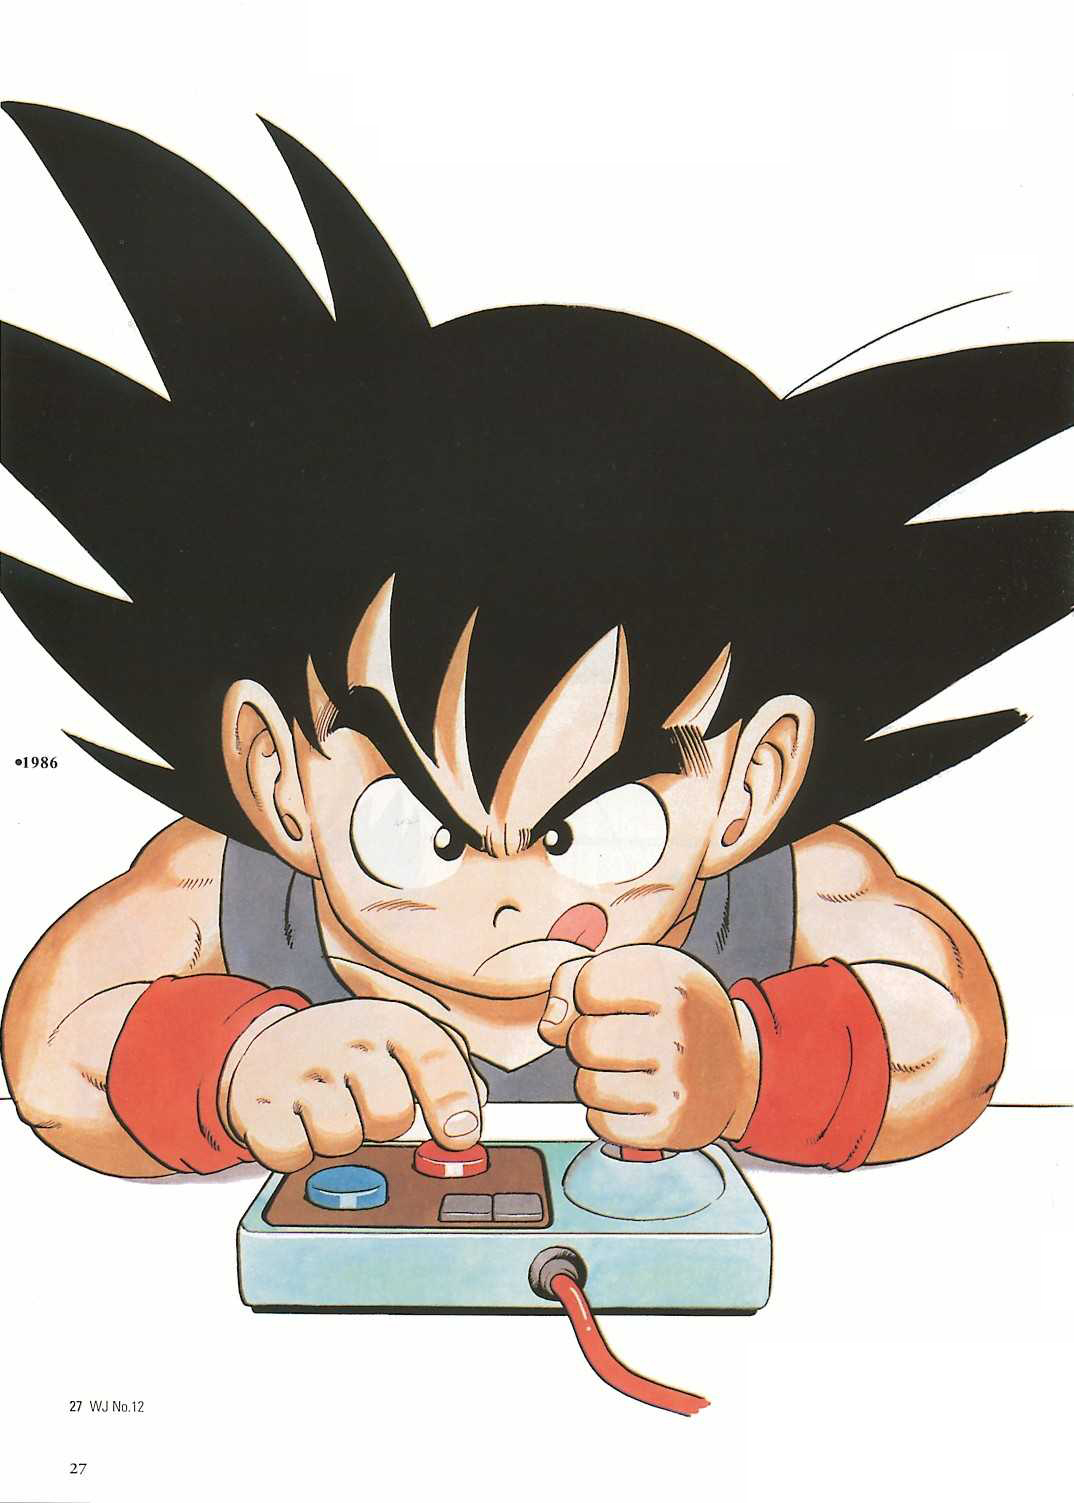 Dez curiosidades sobre Dragon Ball Z para Mega Drive